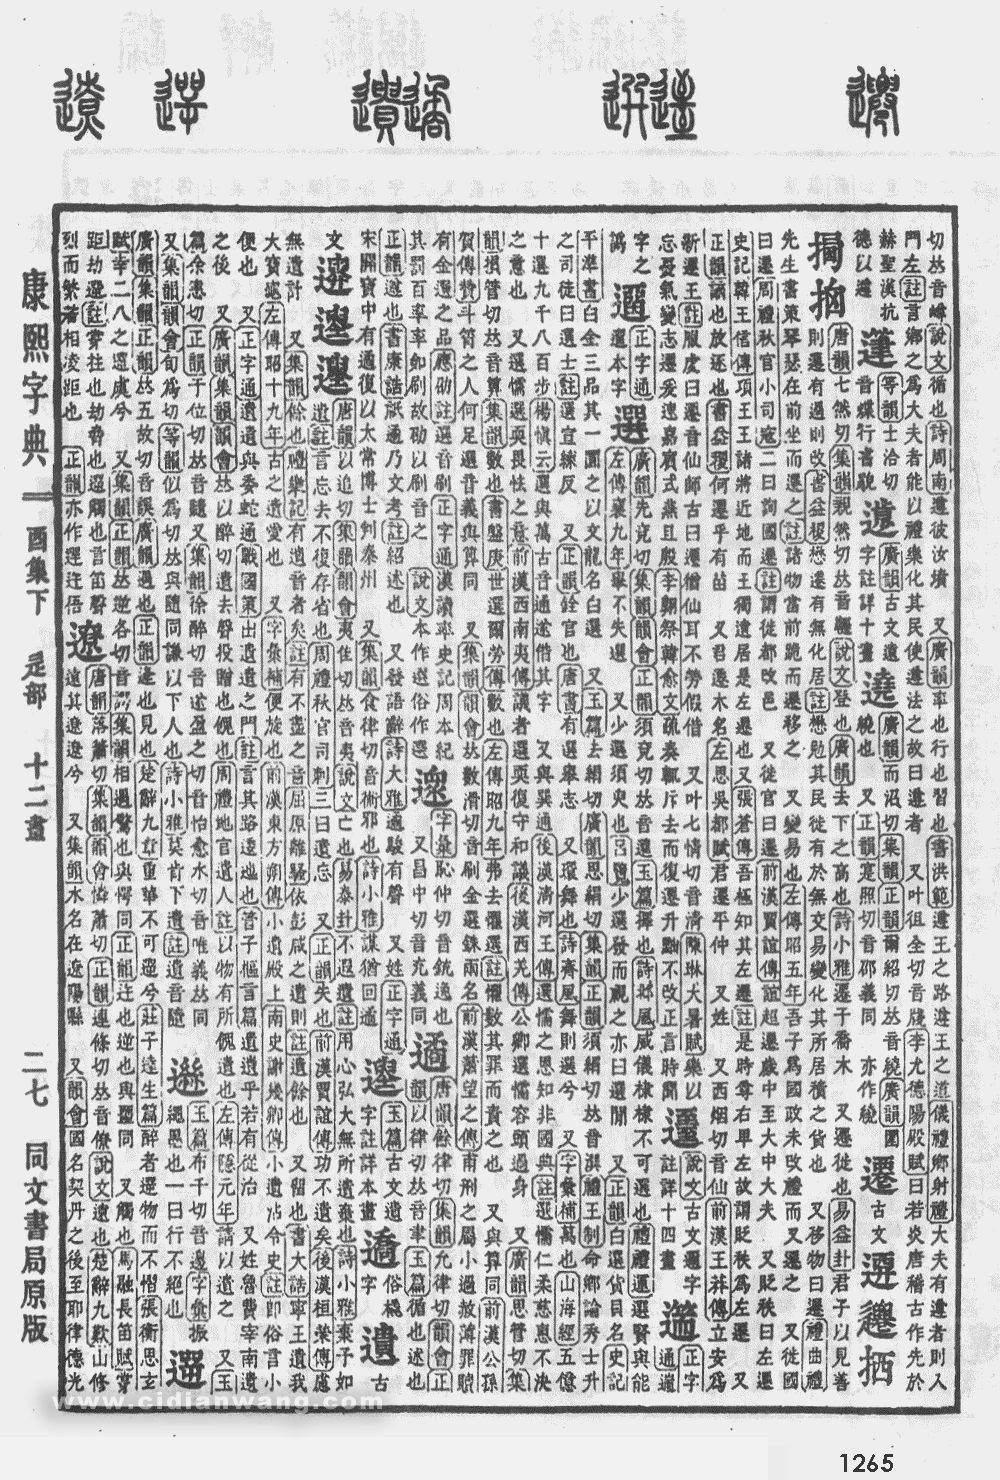 康熙字典掃描版第1265頁